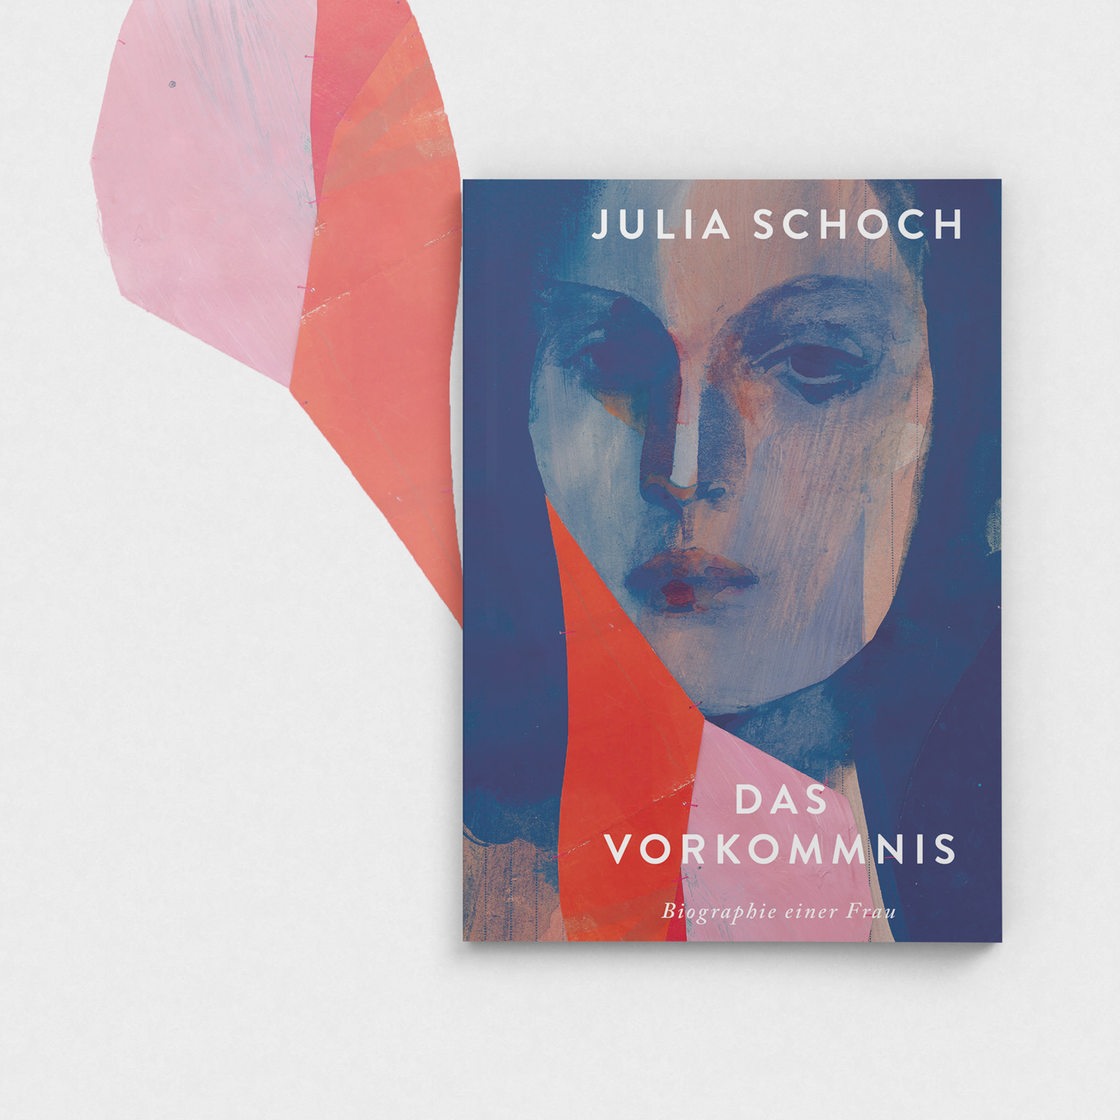 Buchcover Julia Schoch, "Das Vorkommnis"